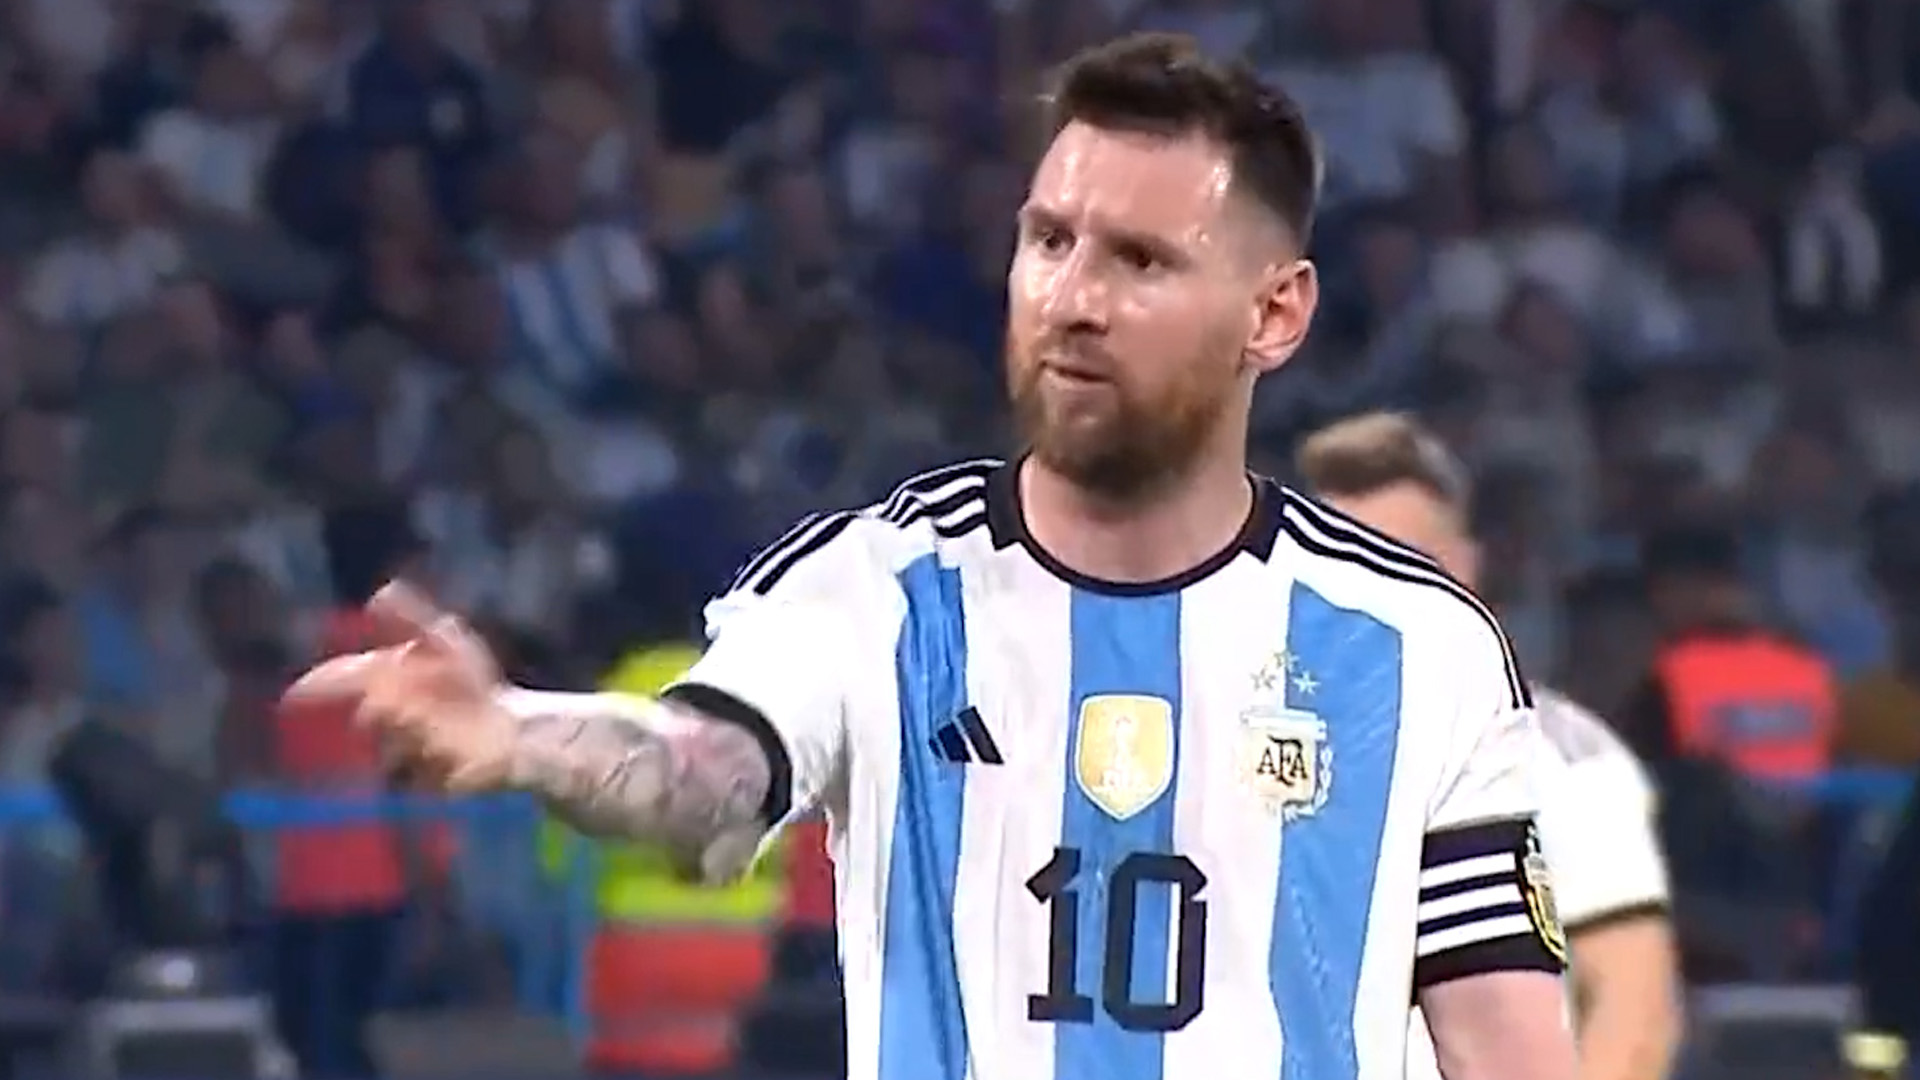 El reto de Messi a un alcanzapelotas en plena goleada de Argentina ante Curazao: “Me cagó a pedos”